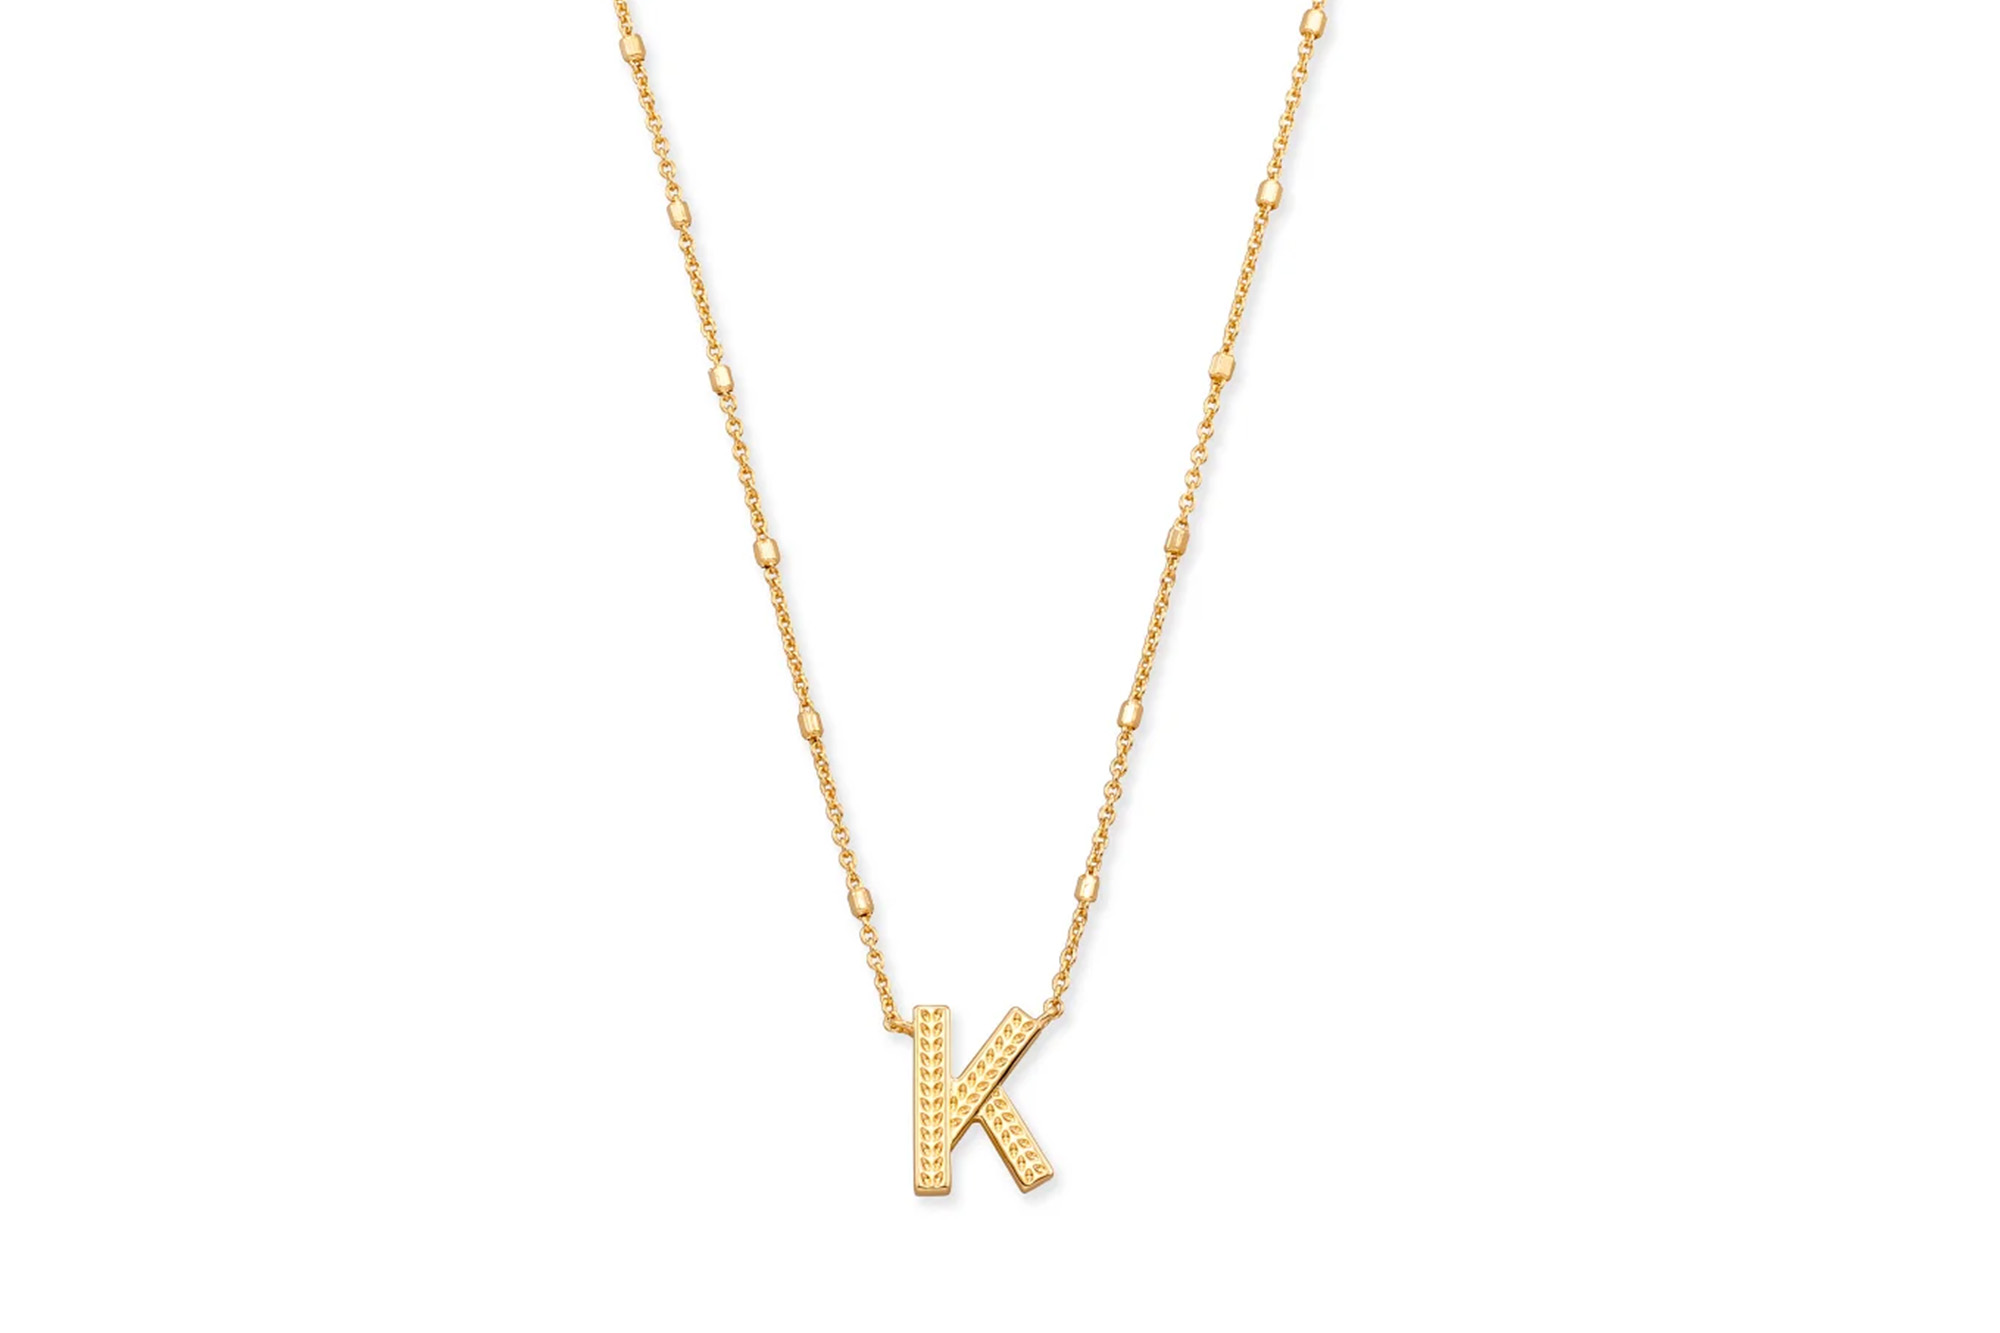 A "K" Initialenanhänger an einer Goldkette